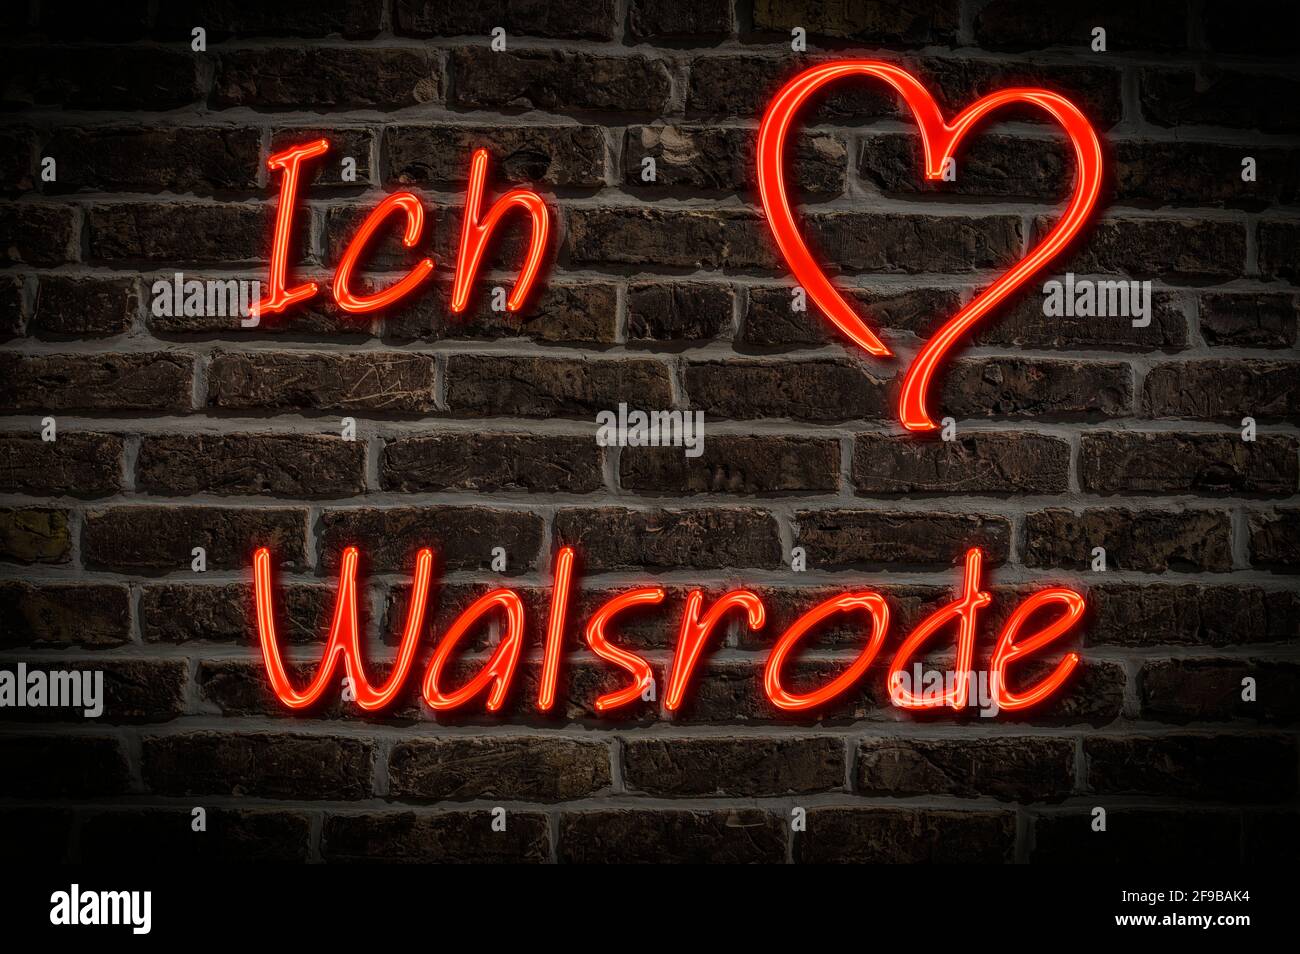 Leuchtreklame, Ich liebe Walsrode, Niedersachsen, Deutschland, Europa | Illuminated advertising, I love Walsrode, Lower Saxony, Germany, Europe Stock Photo